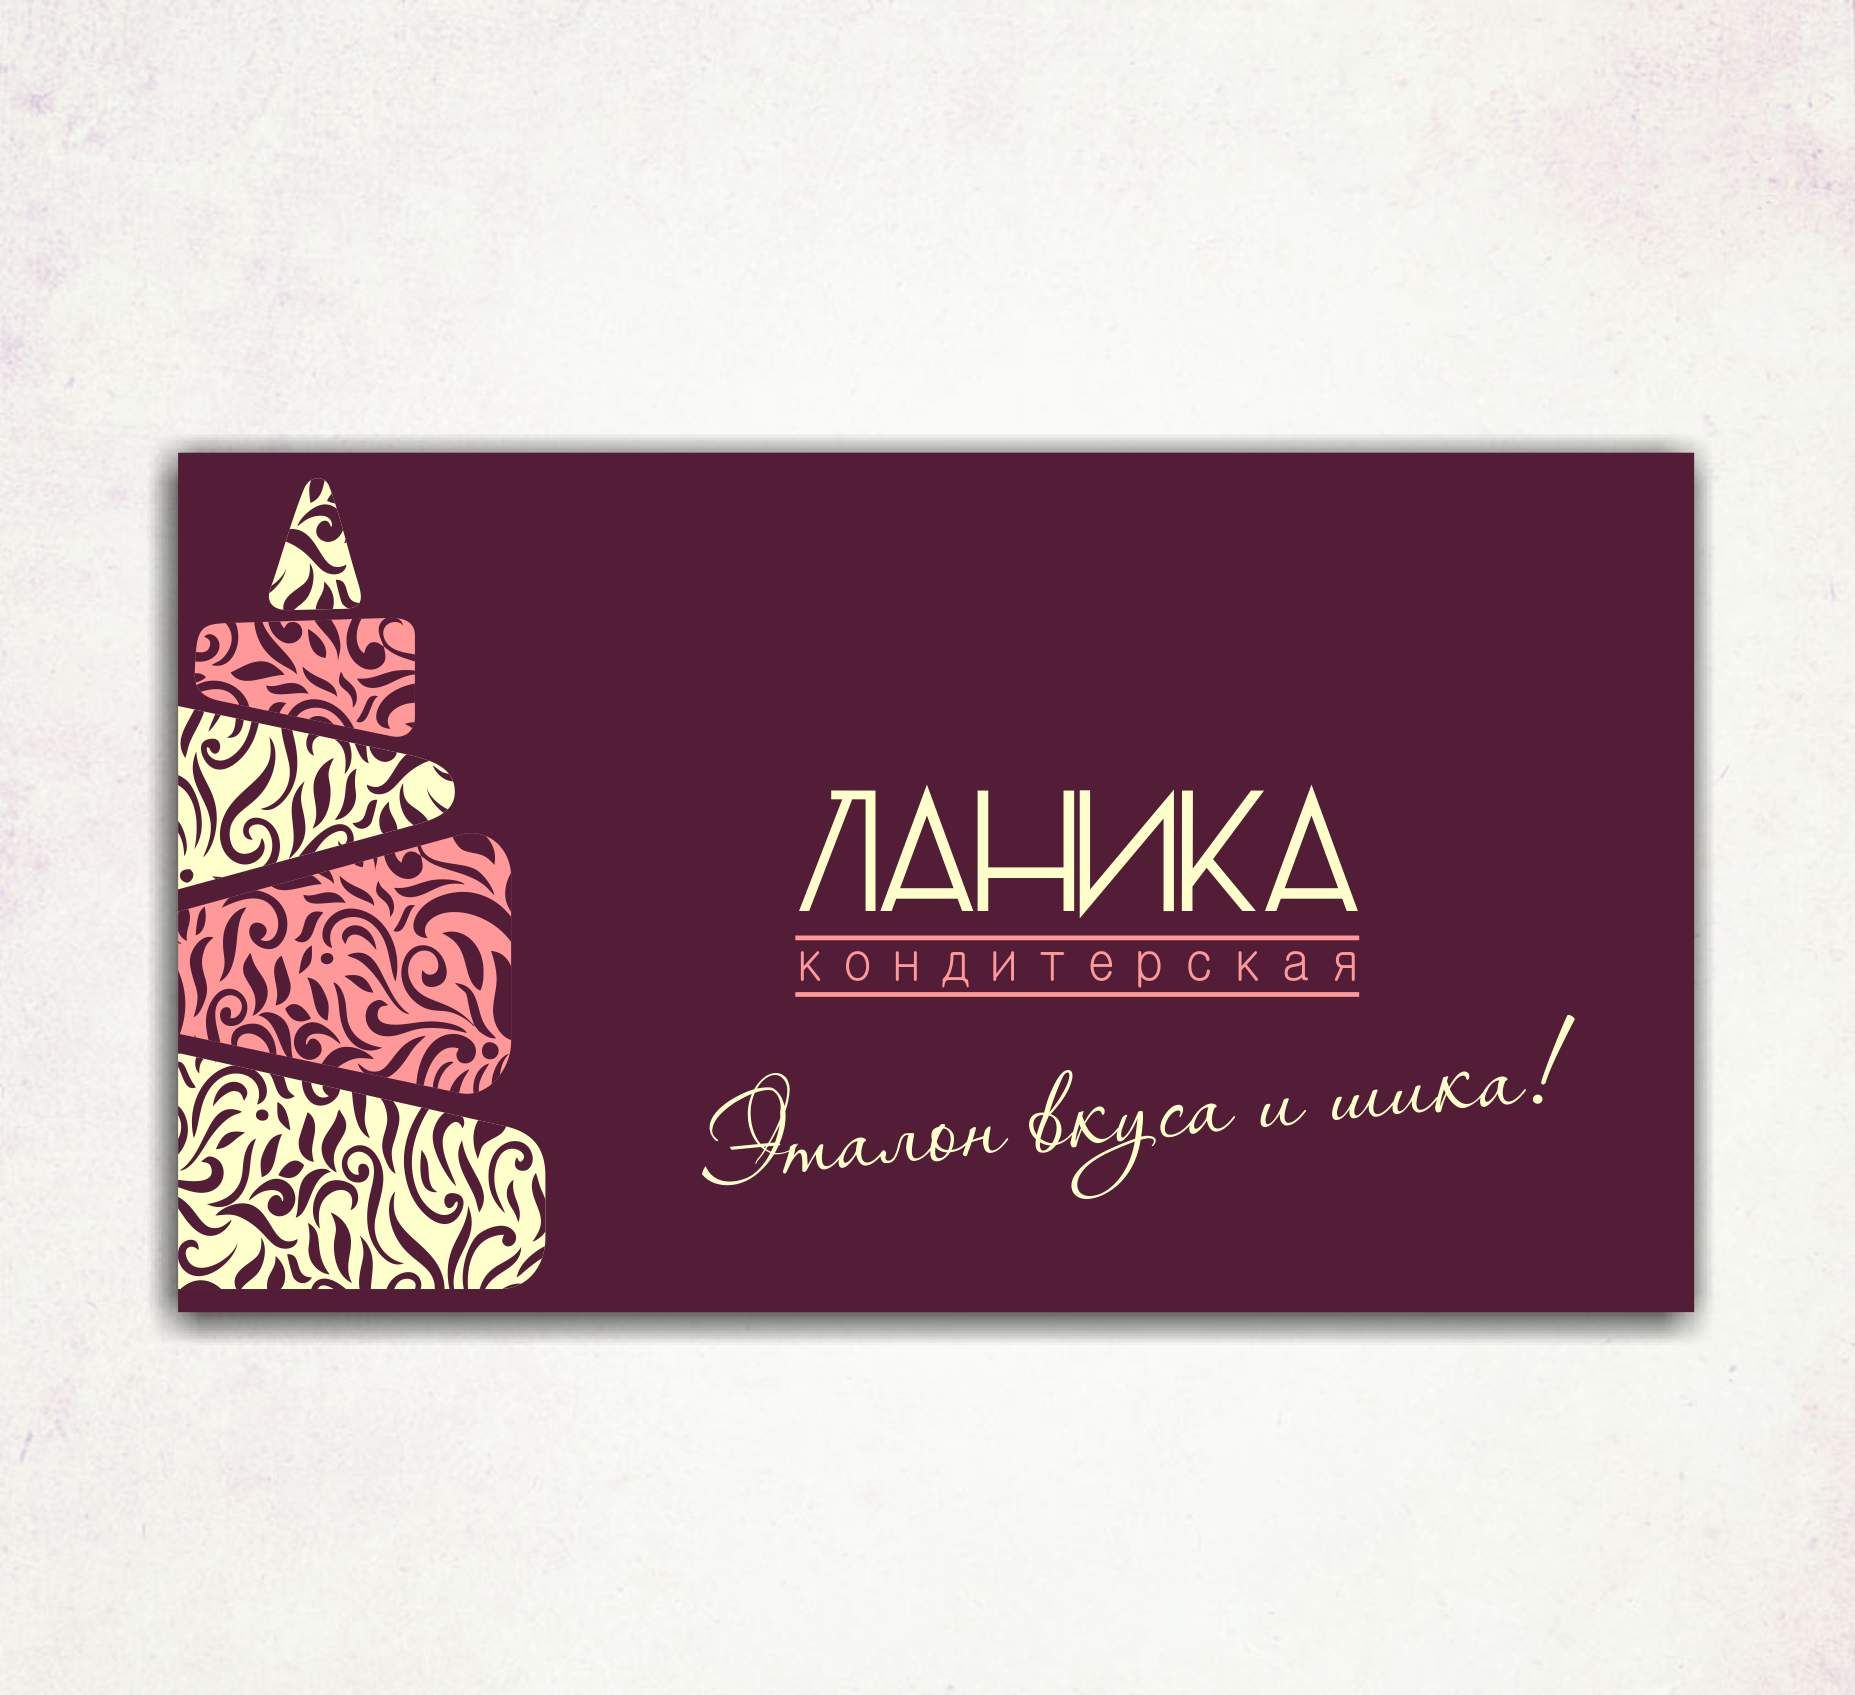 Лого ИМ тортов,пирожных и печенья ручной работы - дизайнер ElenaCHEHOVA